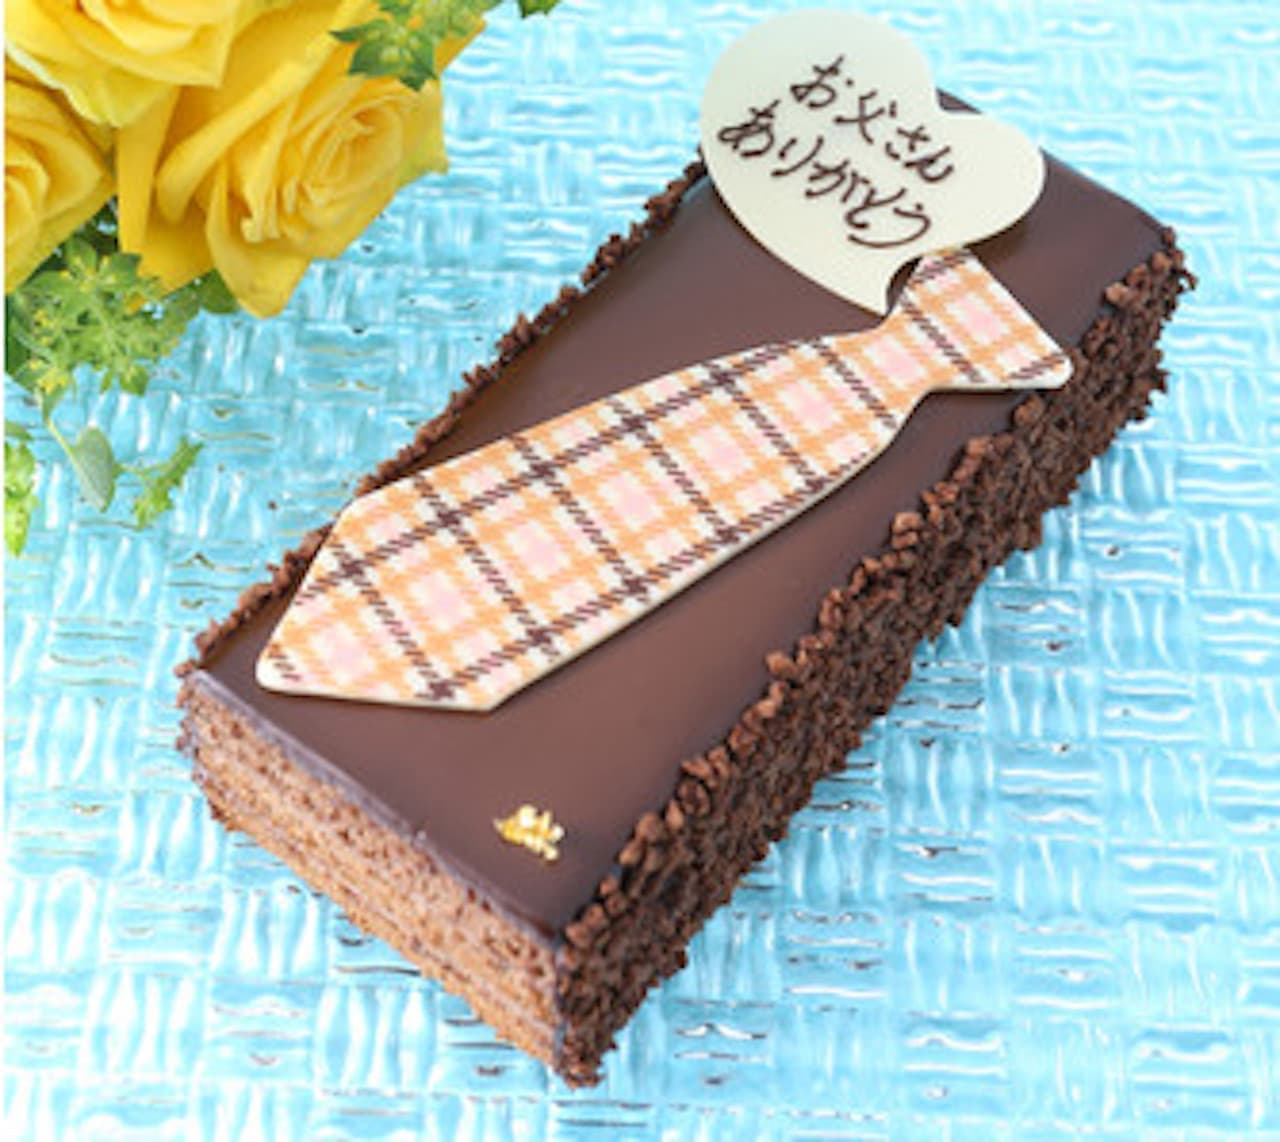 アンテノール 父の日限定ケーキ「父の日 ベルギーショコラケーキ」